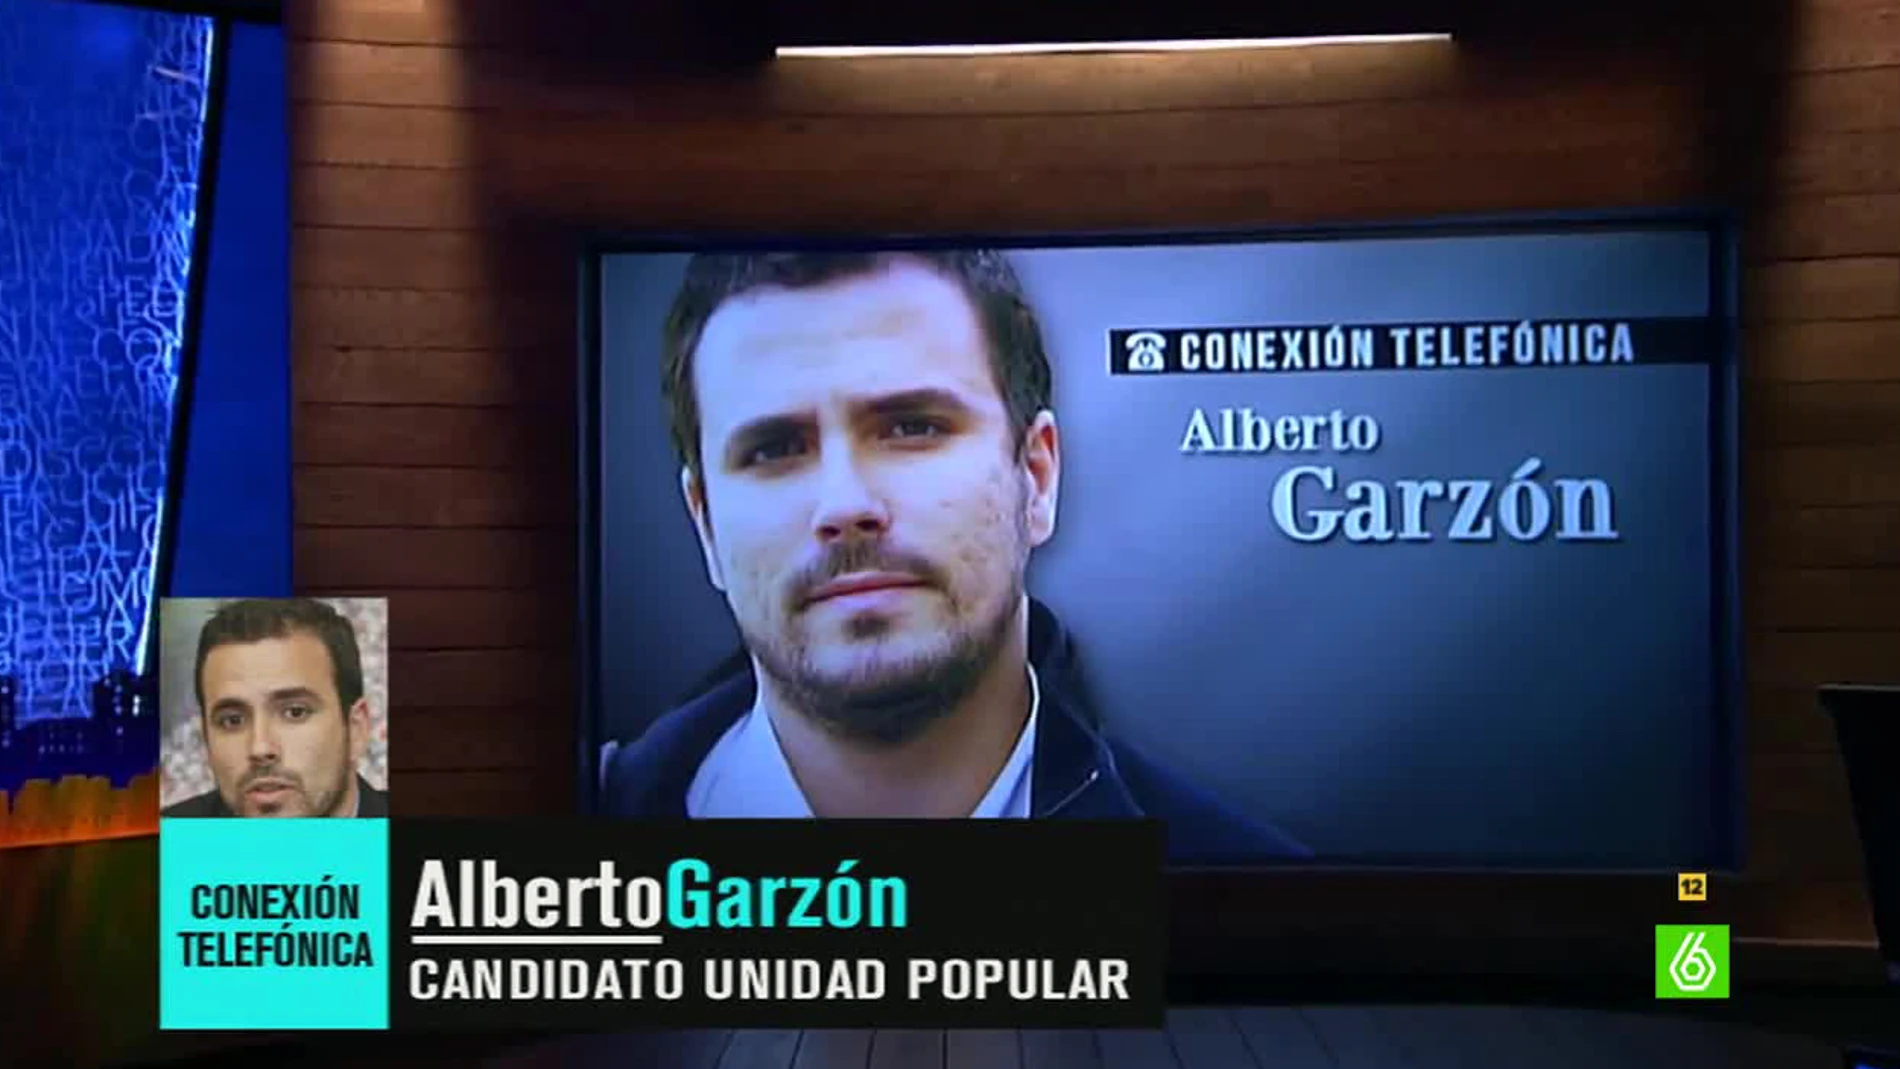 Alberto Garzón comenta la agresión a Rajoy: "Quien discrepe con Rajoy, como yo, tiene que hacerlo desde una actitud pacífica"